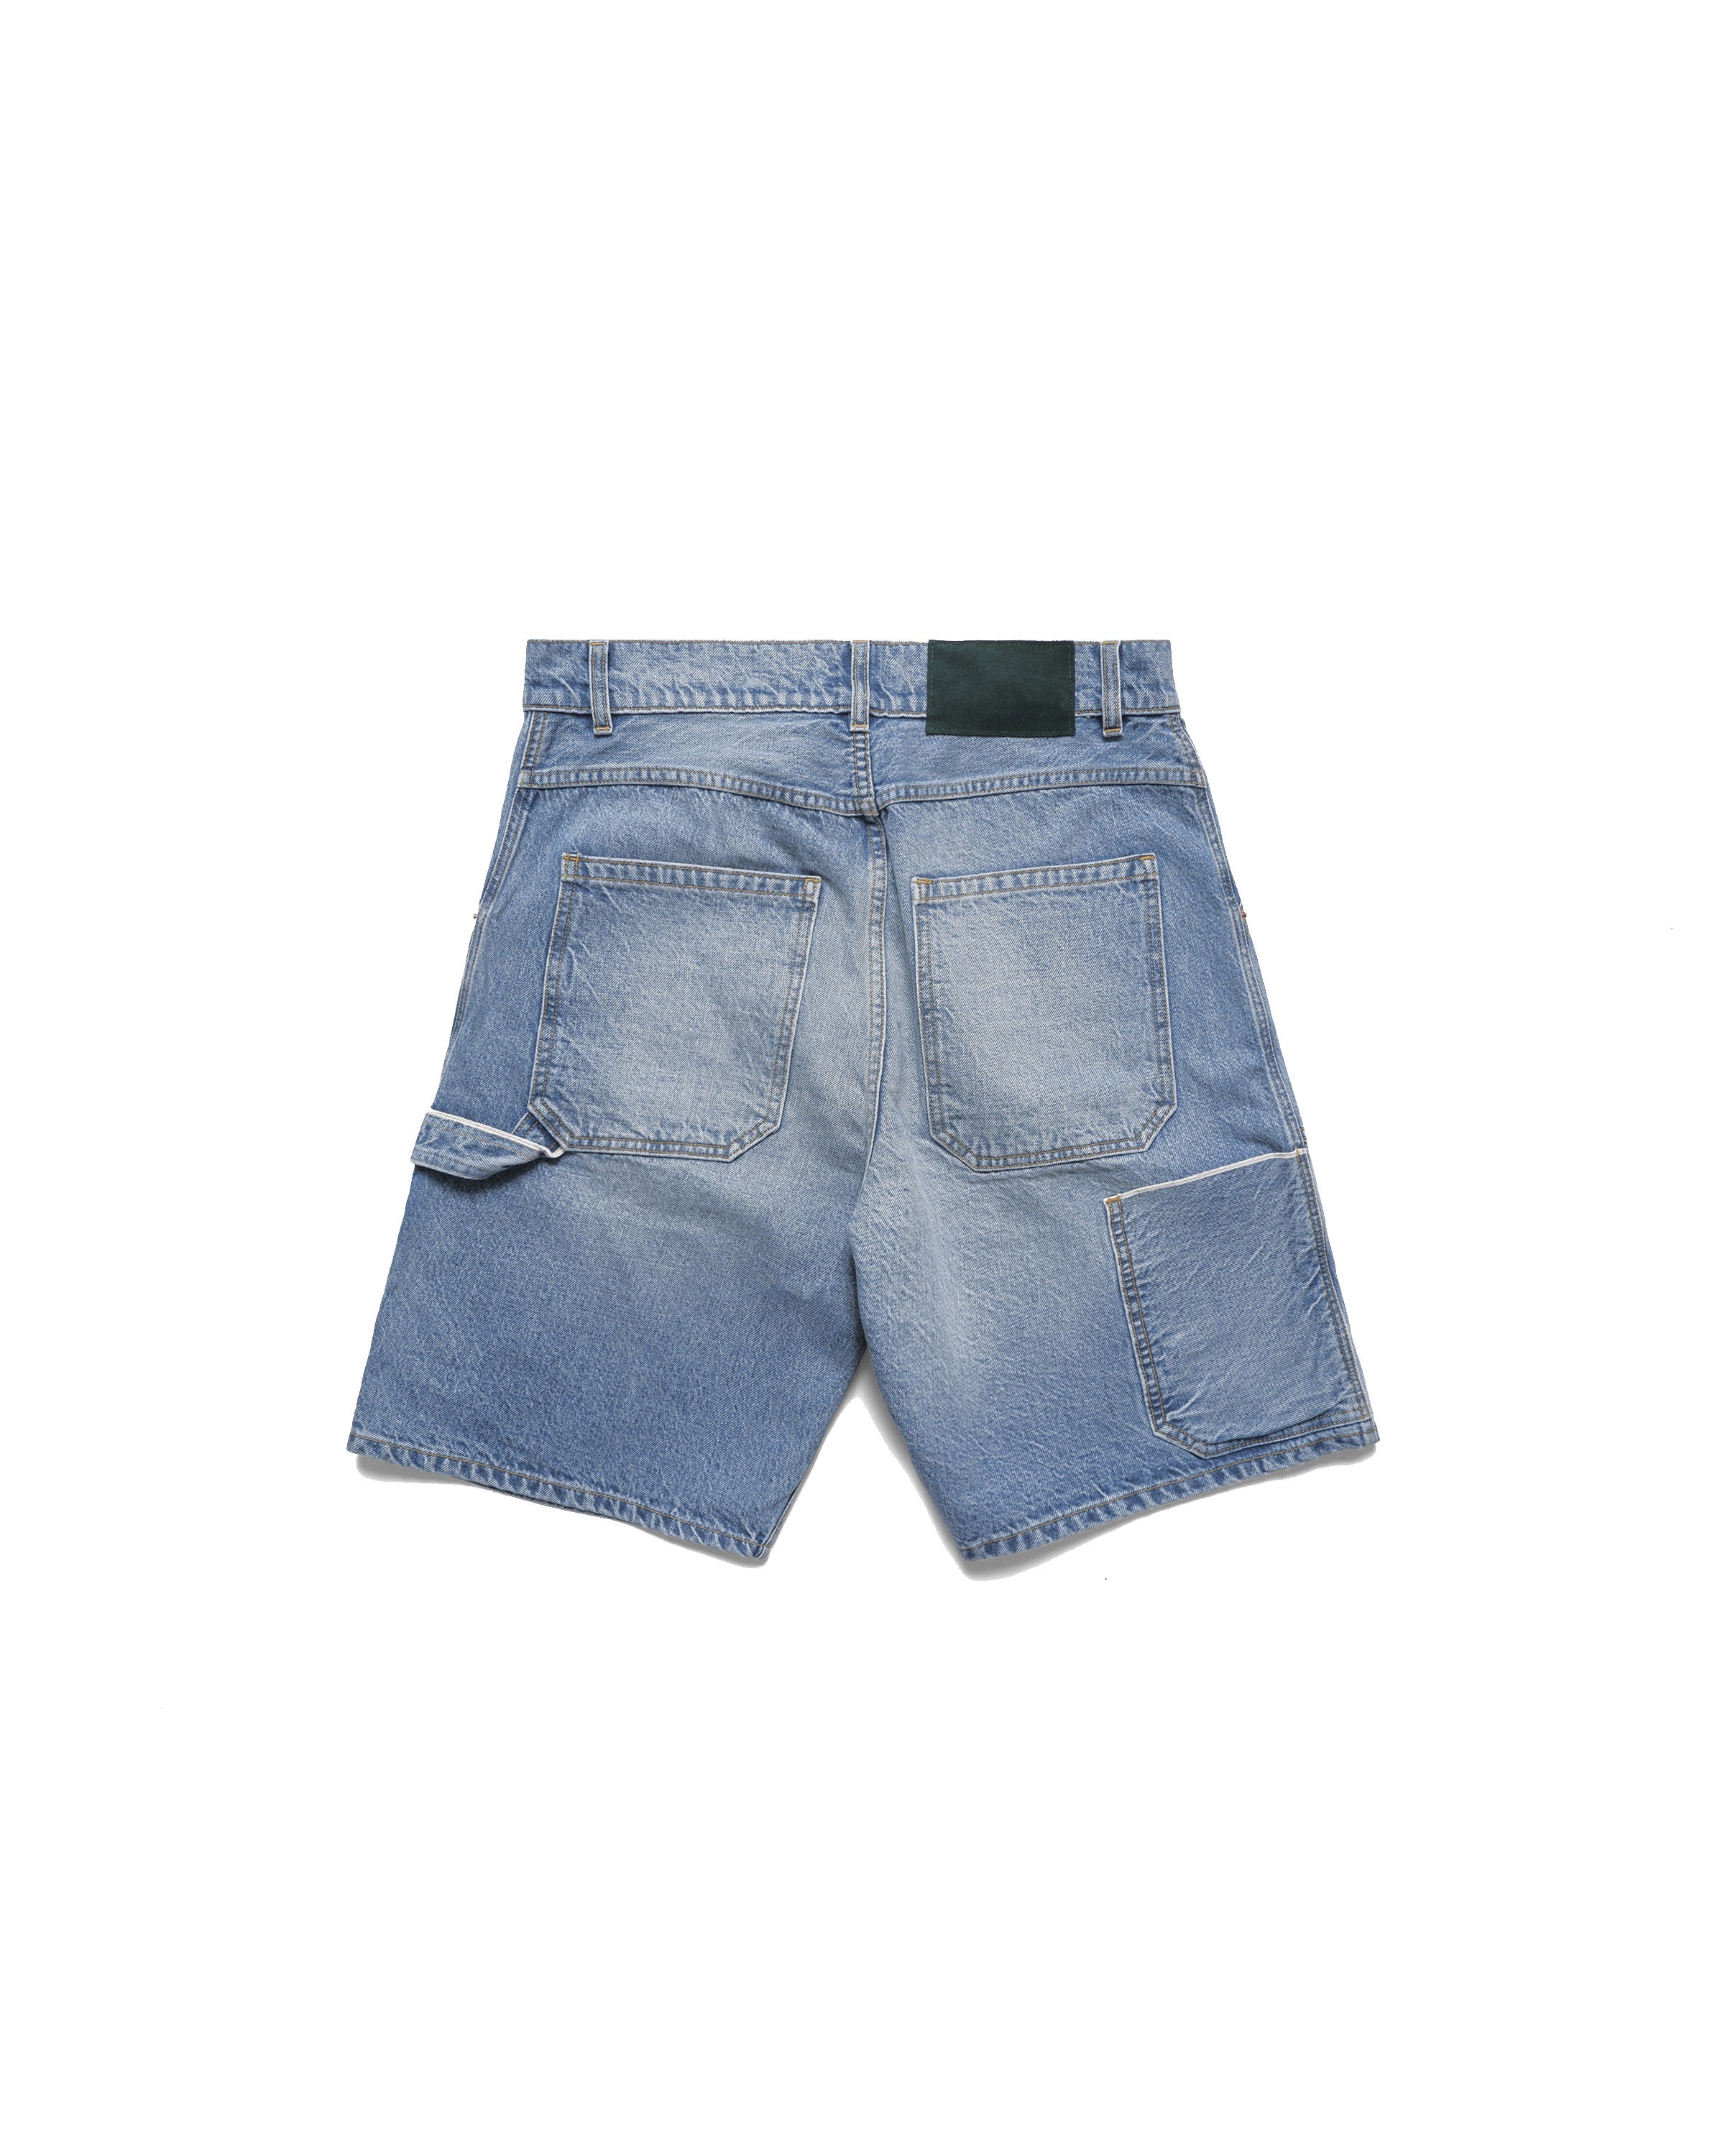 Carpenter Shorts - Indigo Wash